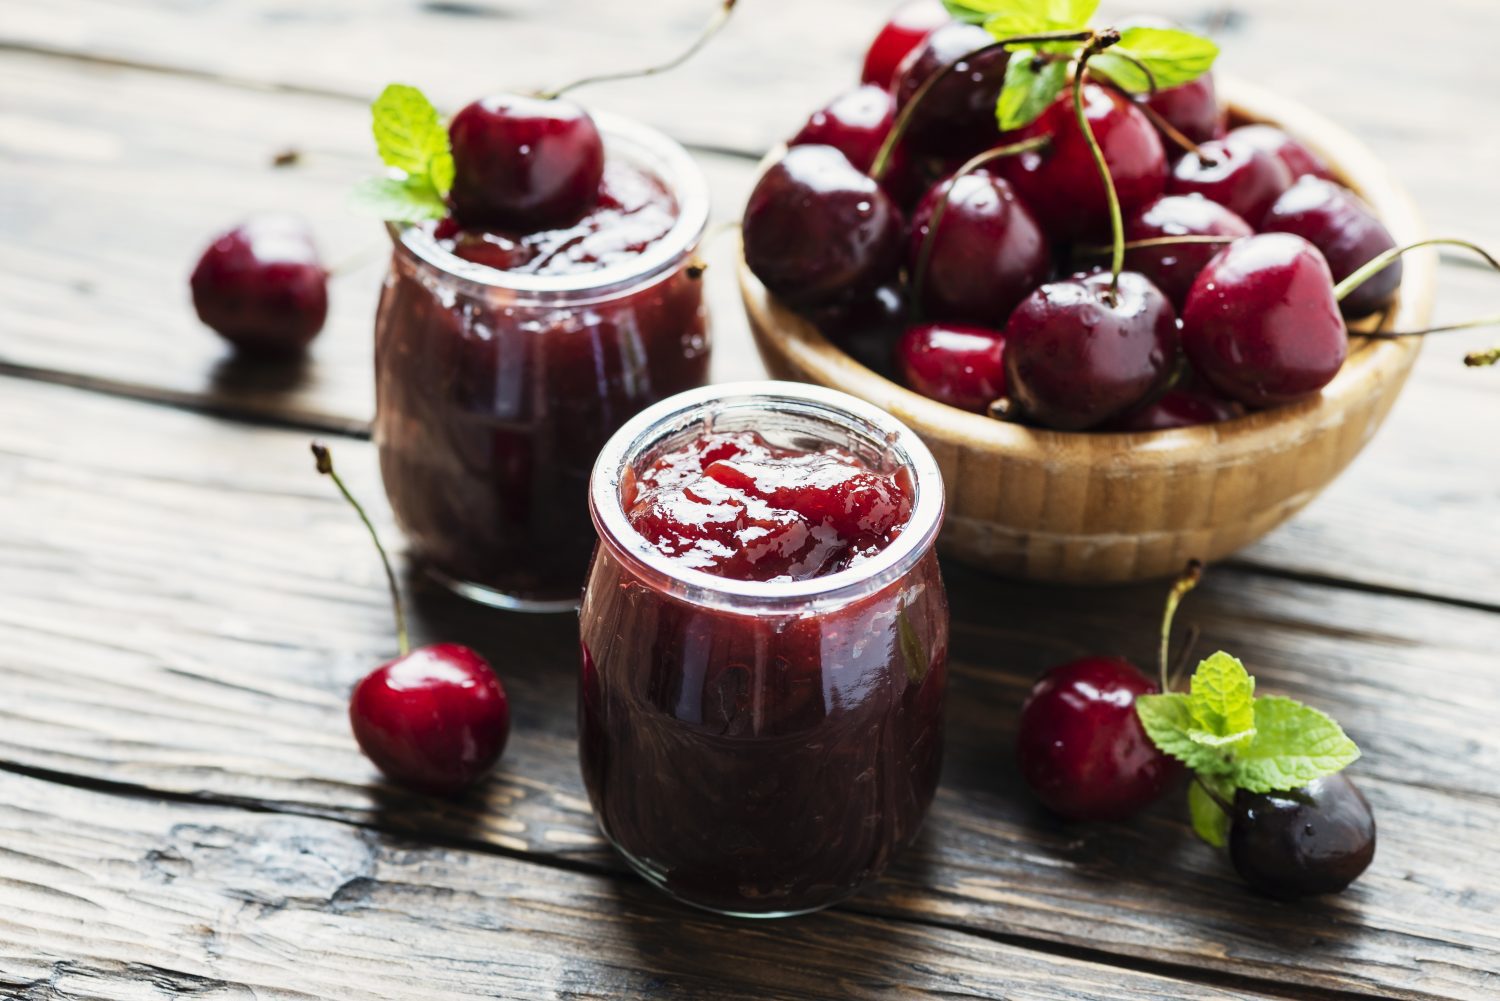 Homemade cherry jam 2021 08 28 05 14 05 utc scaled